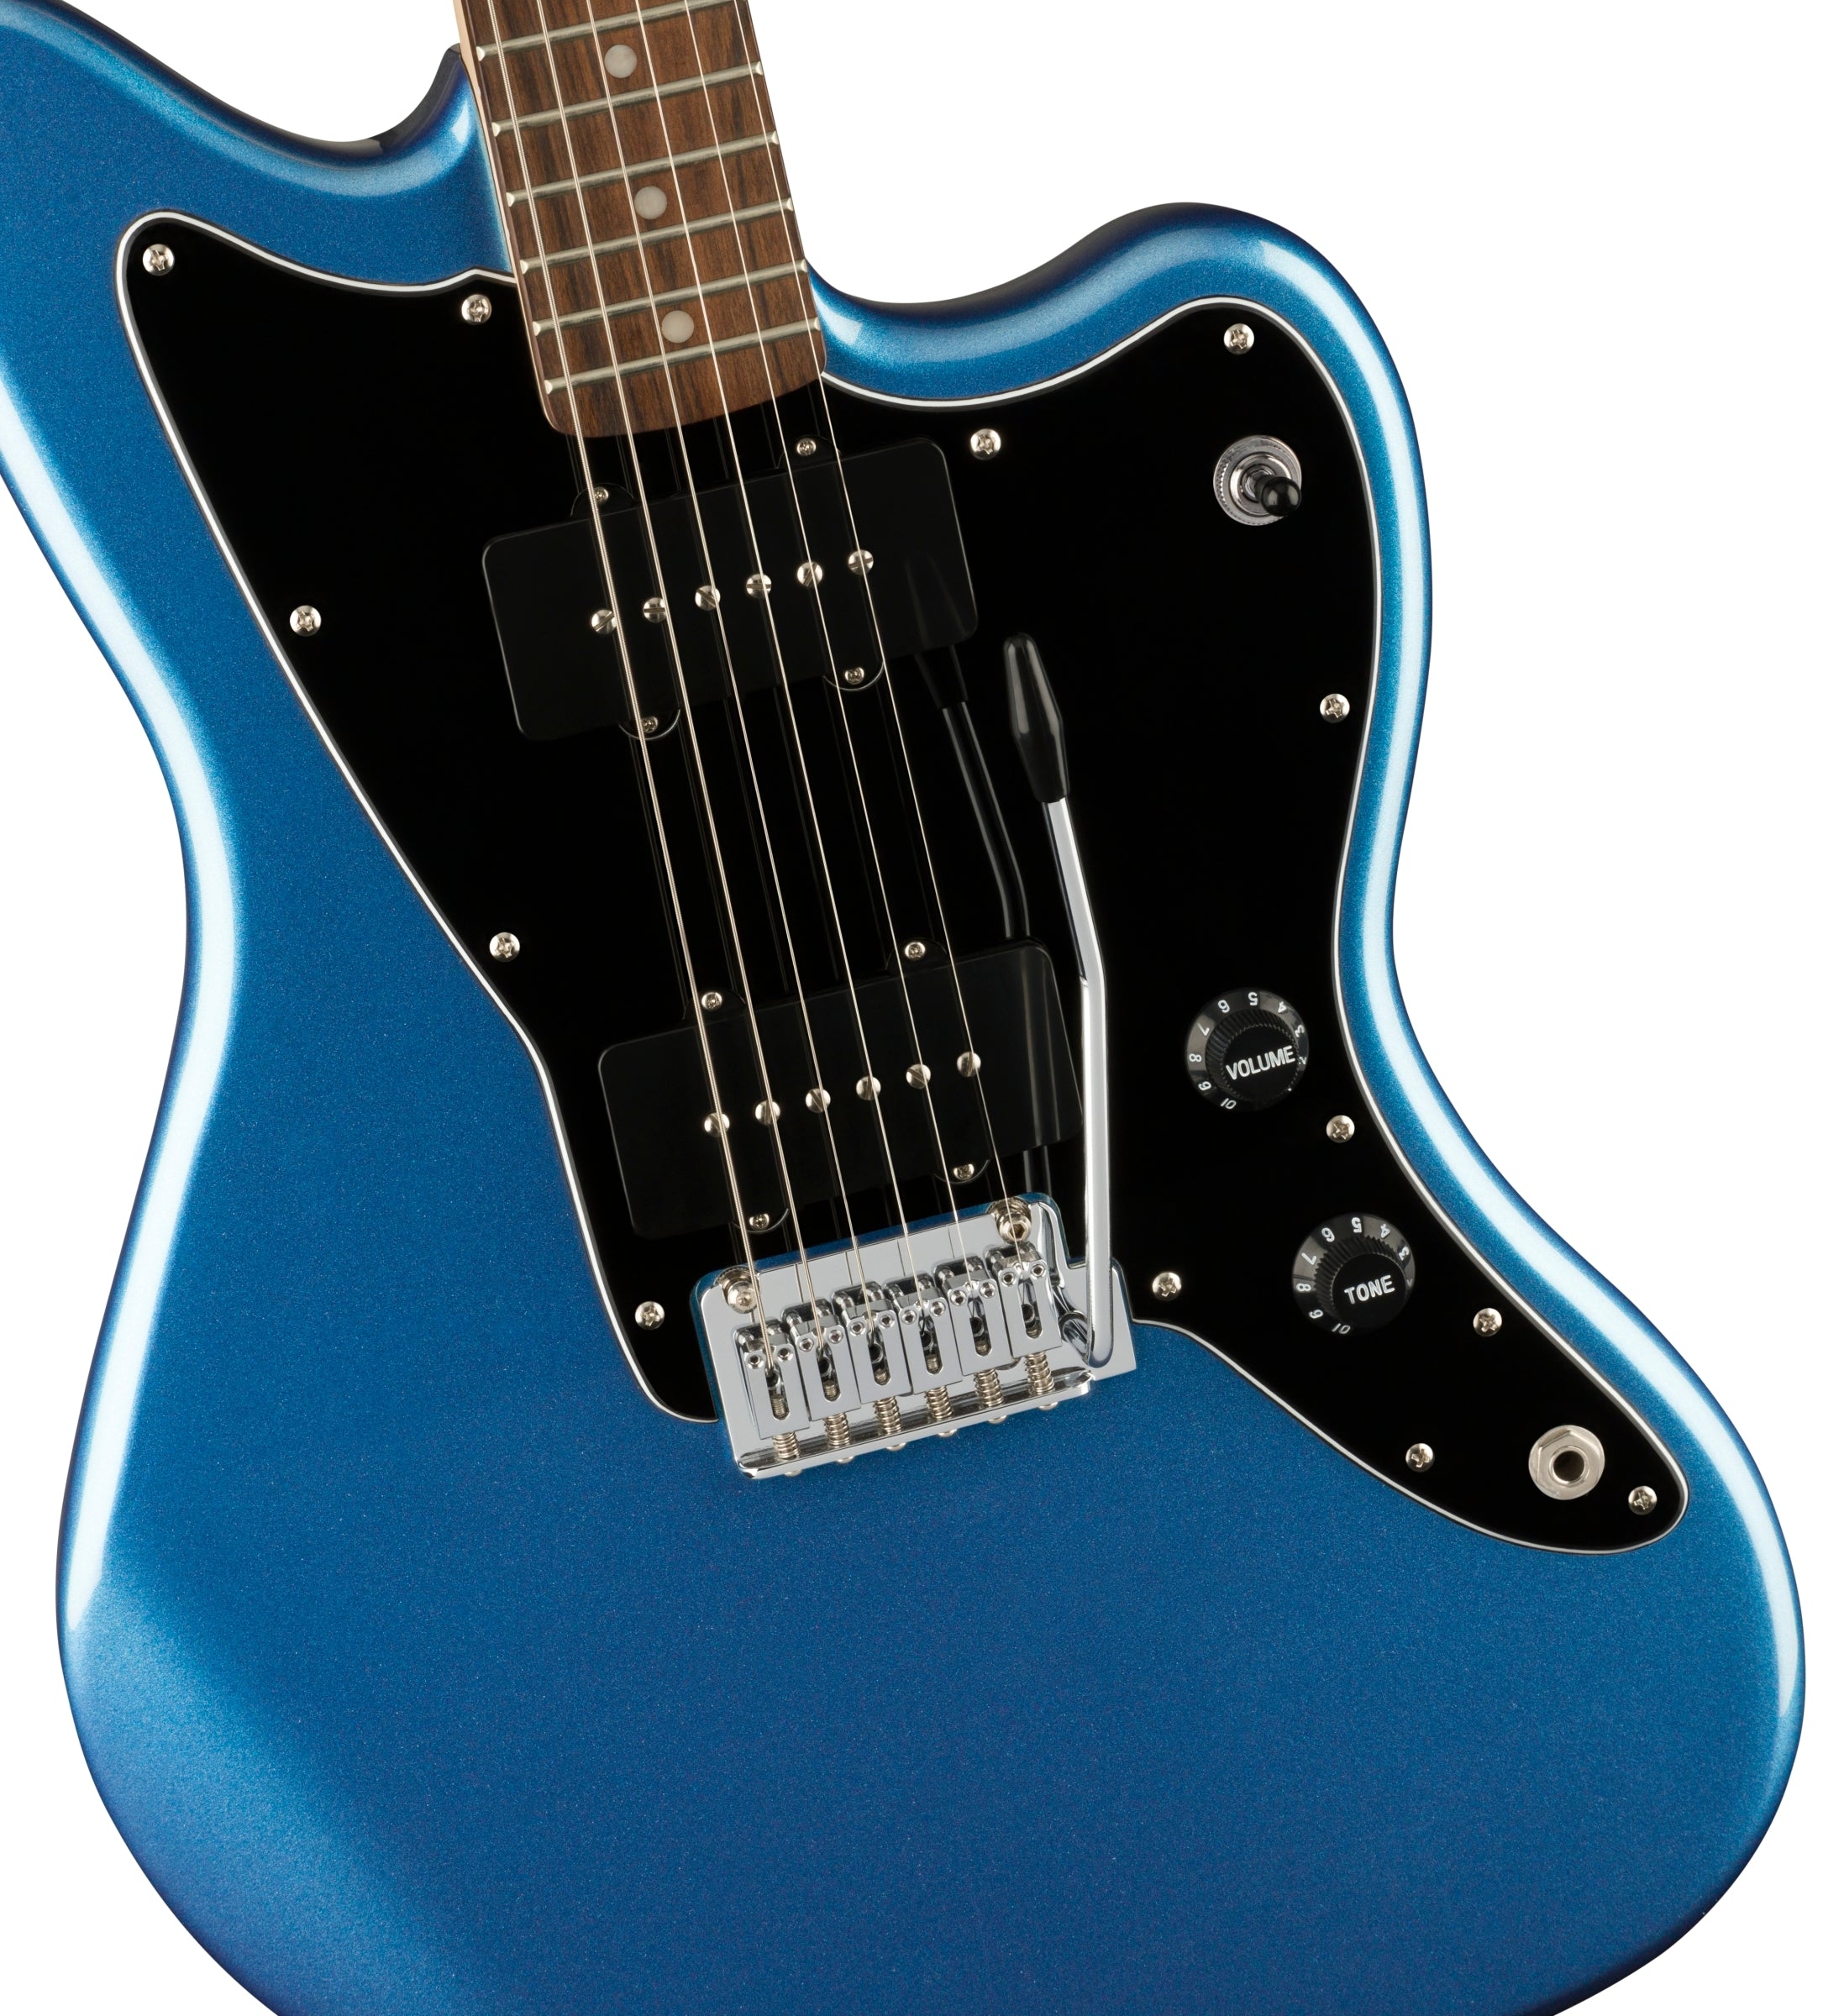 guitarra electrica marca fender de color azul, affinity jazzmaster. En miche tiendas encuentra gran variedad de guitarras electricas